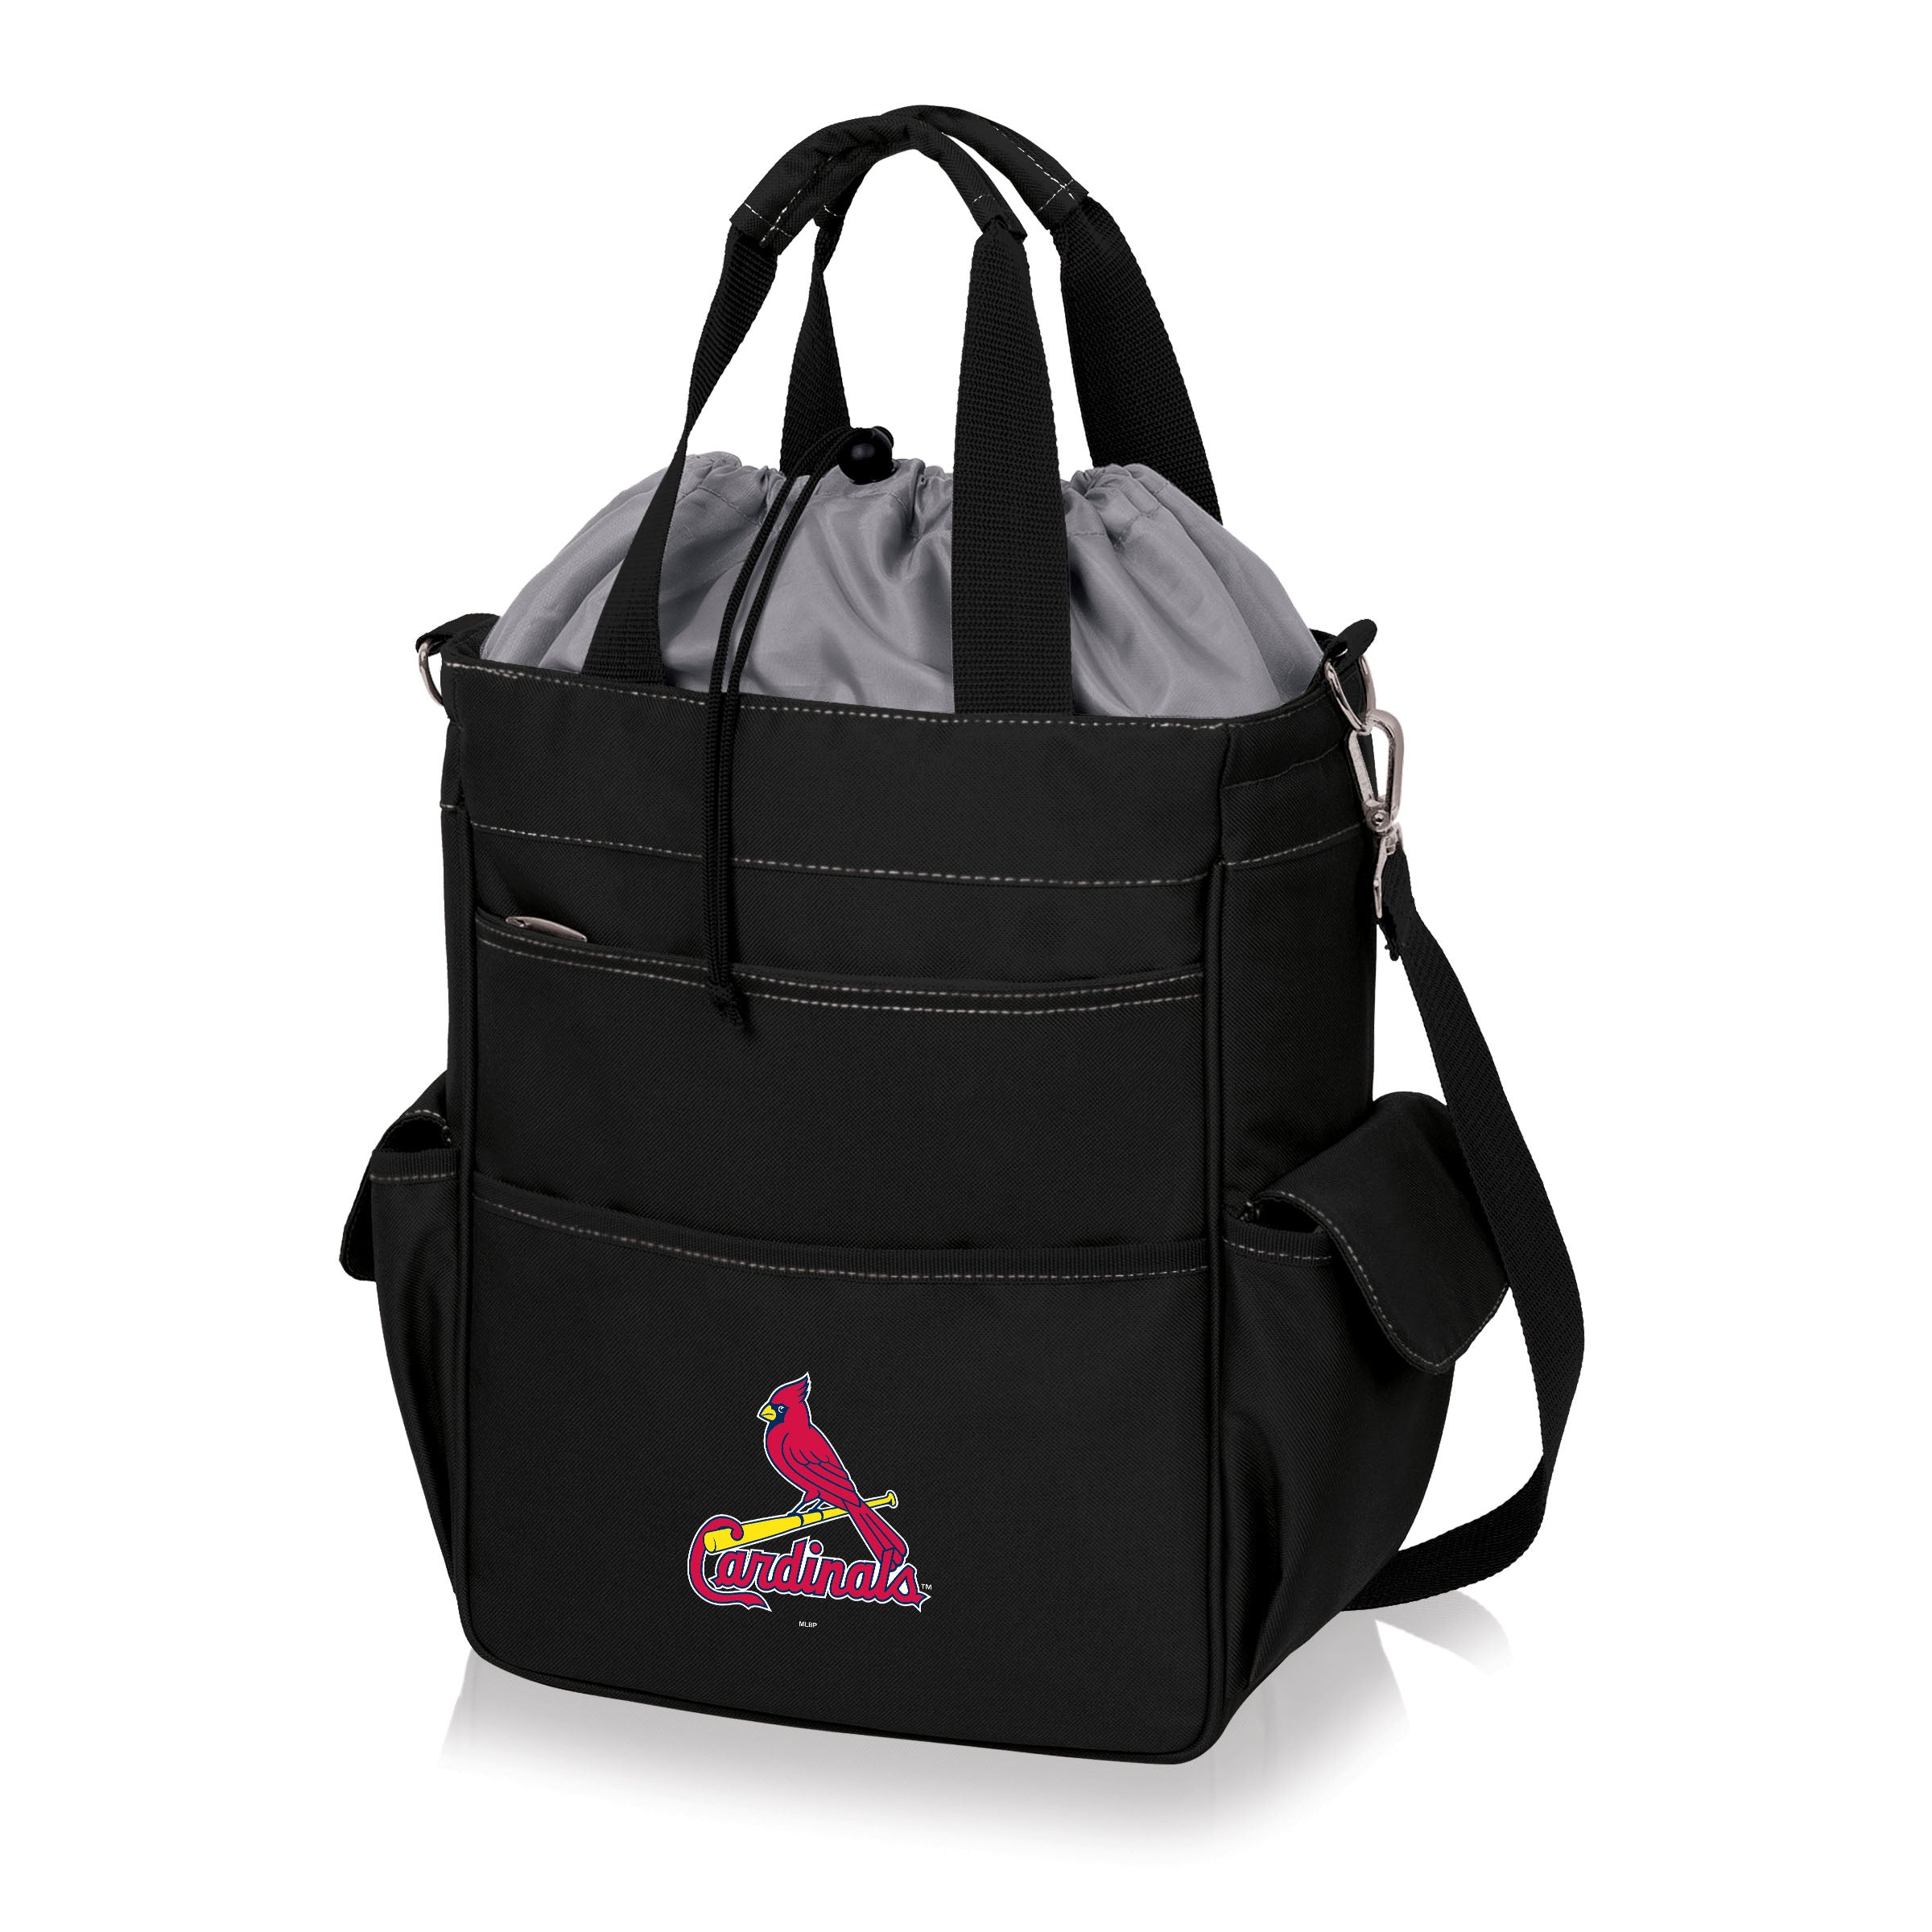 St. Louis Cardinals - Activo Cooler Tote Bag